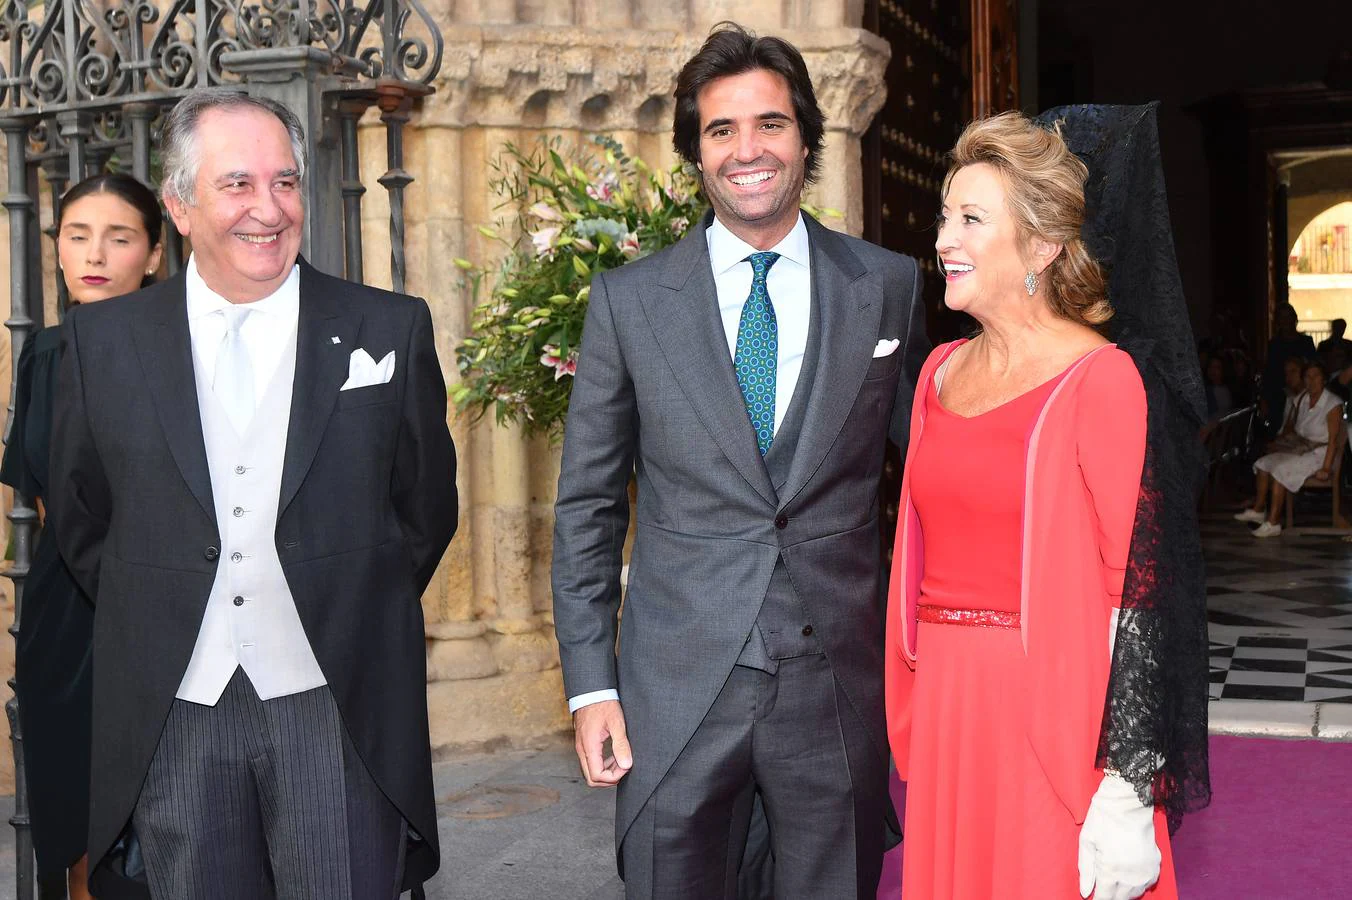 La boda de Sibi Montes y Álvaro Sanchís, en imágenes